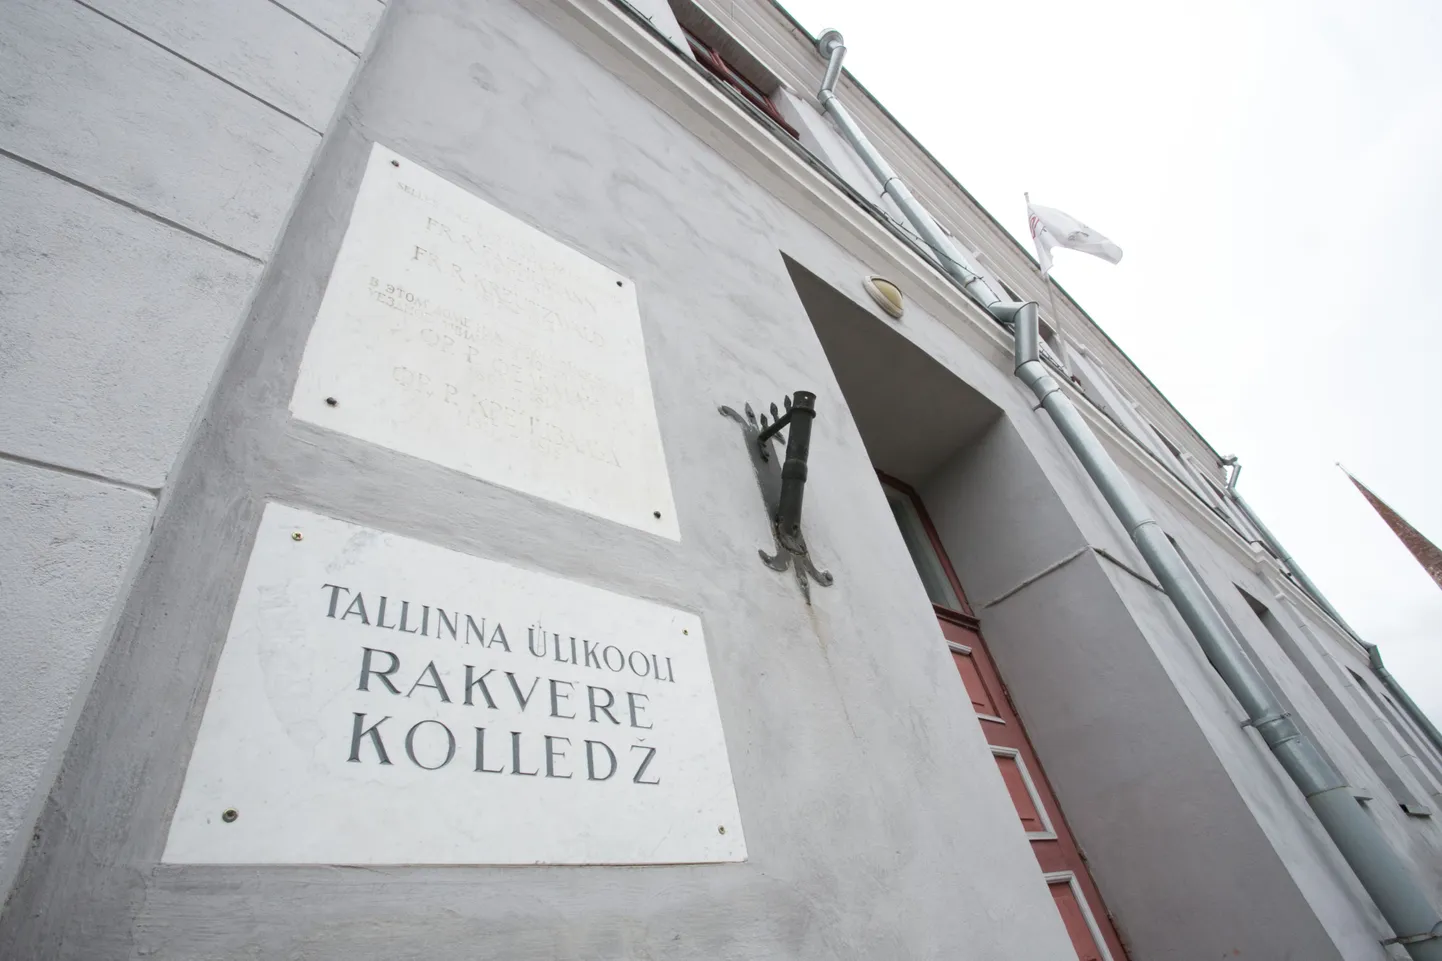 Tallinna ülikooli Rakvere kolledž.